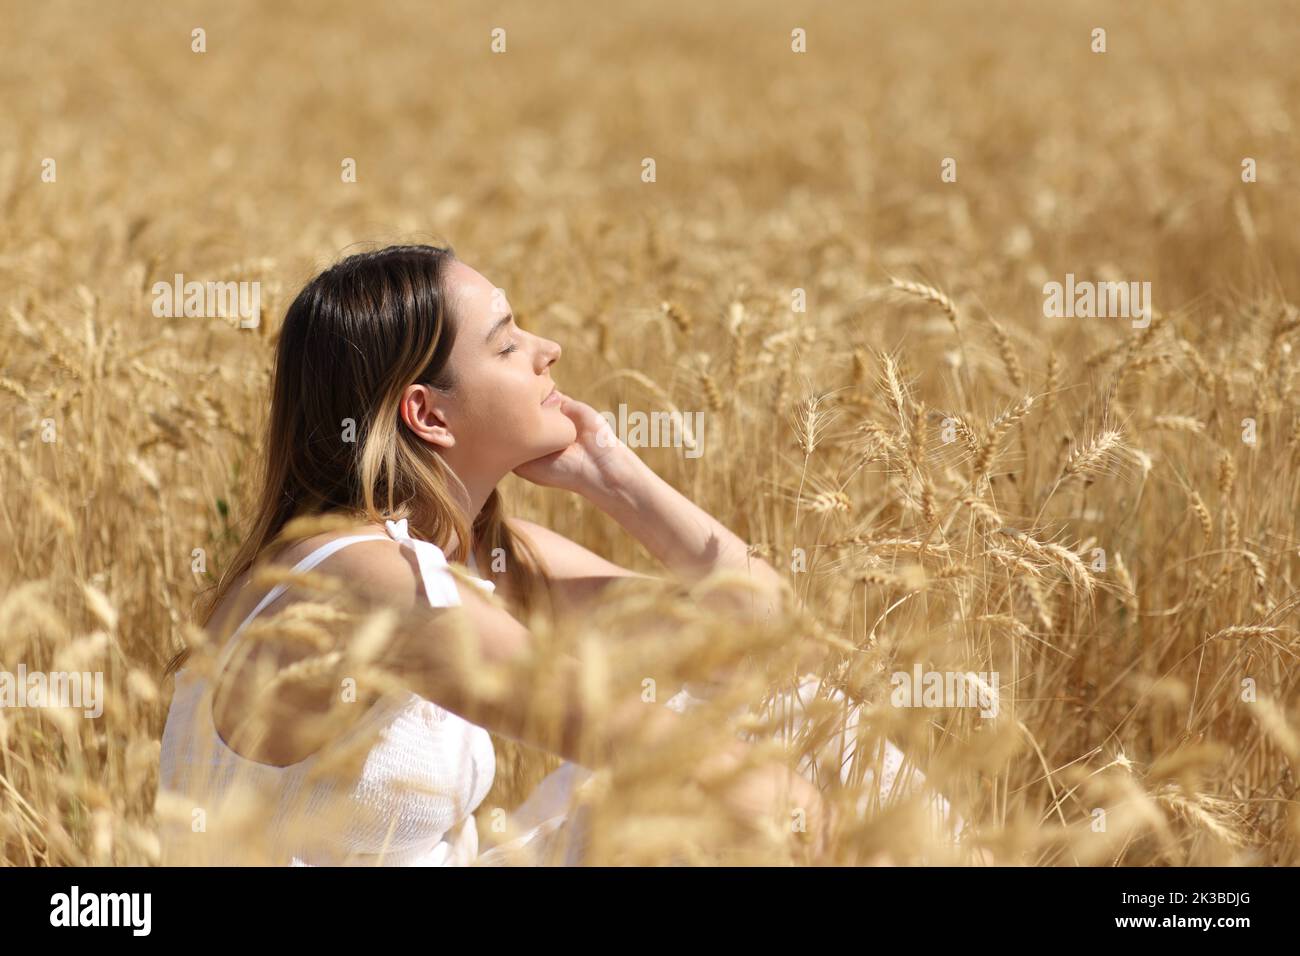 Perfil de una mujer relajada descansando en un campo de trigo dorado Foto de stock